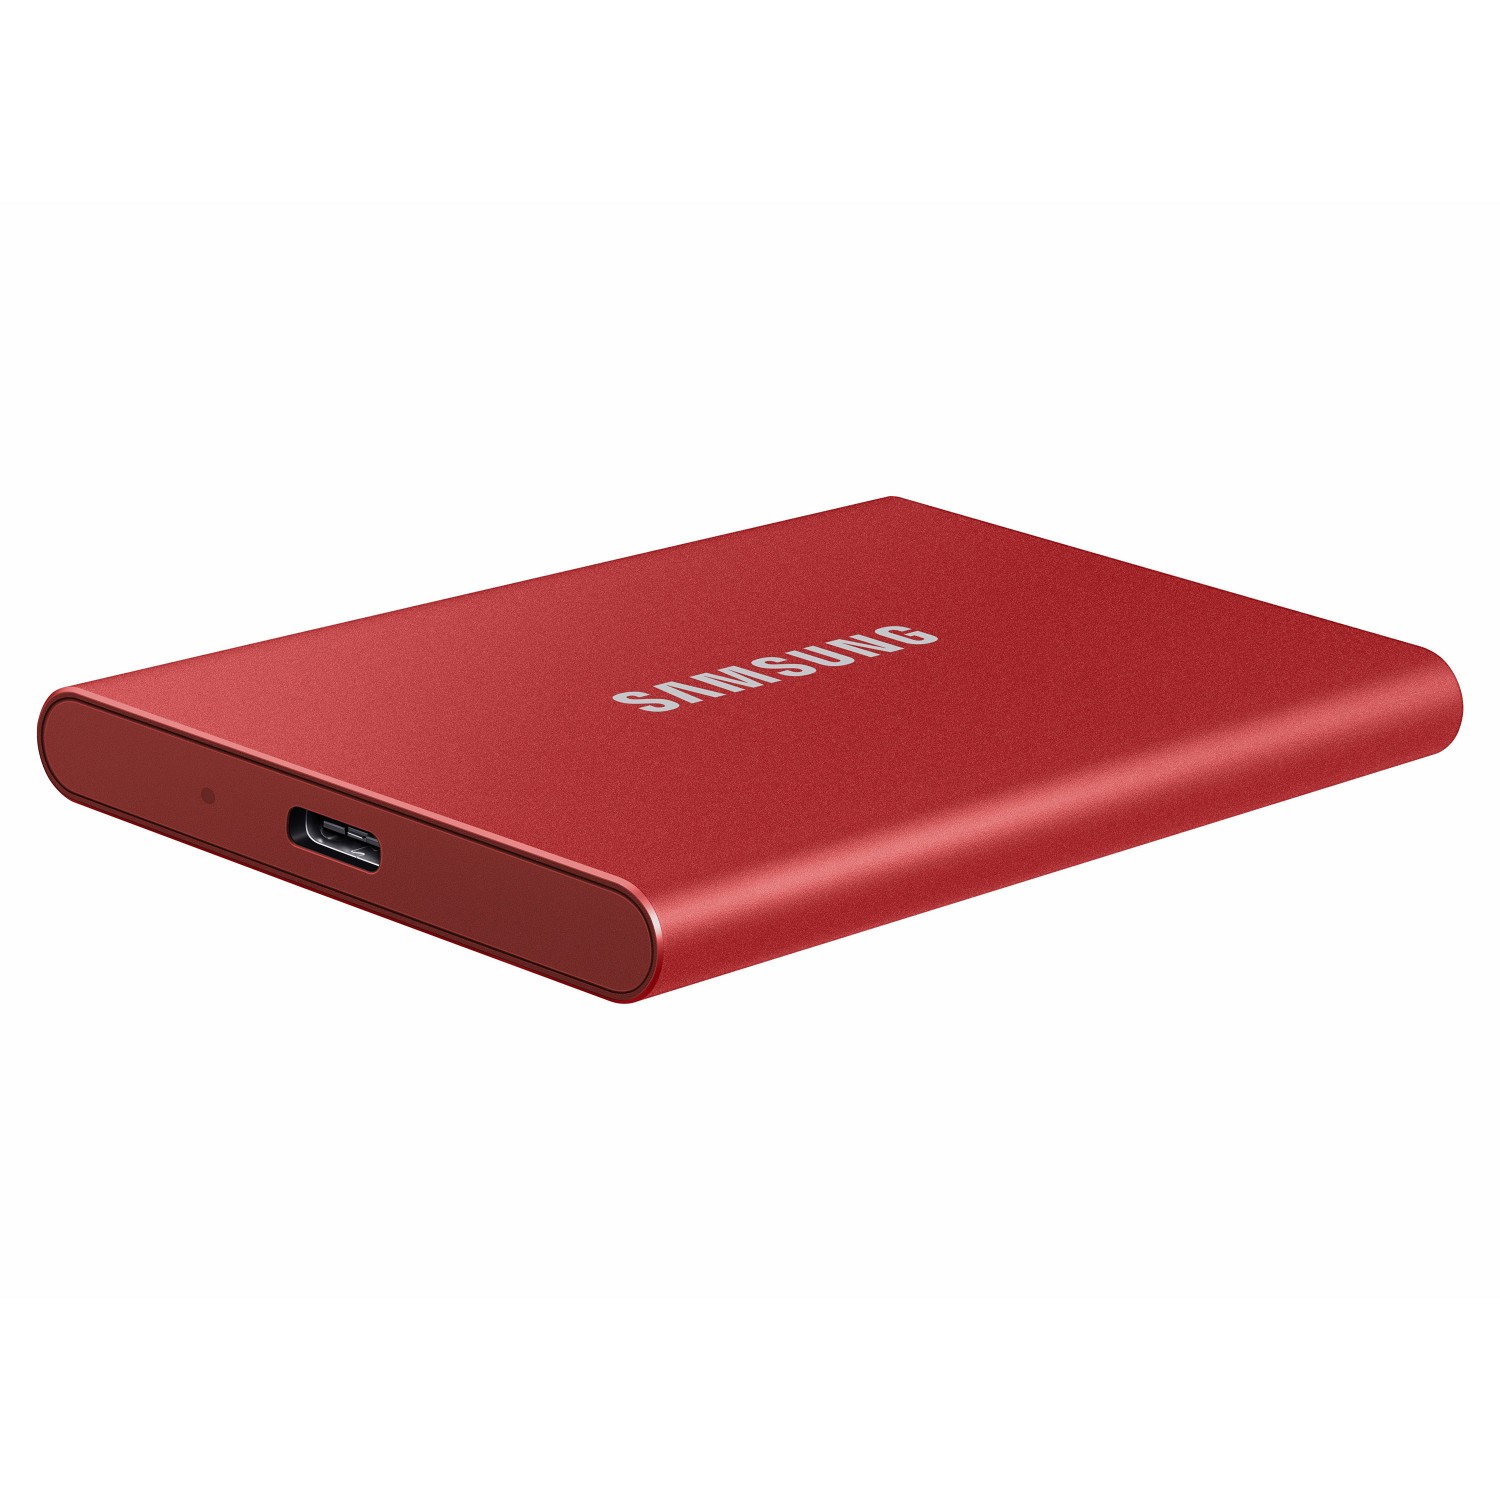 حافظه اس اس دی اکسترنال SAMSUNG T7 1TB - Metallic Red-3